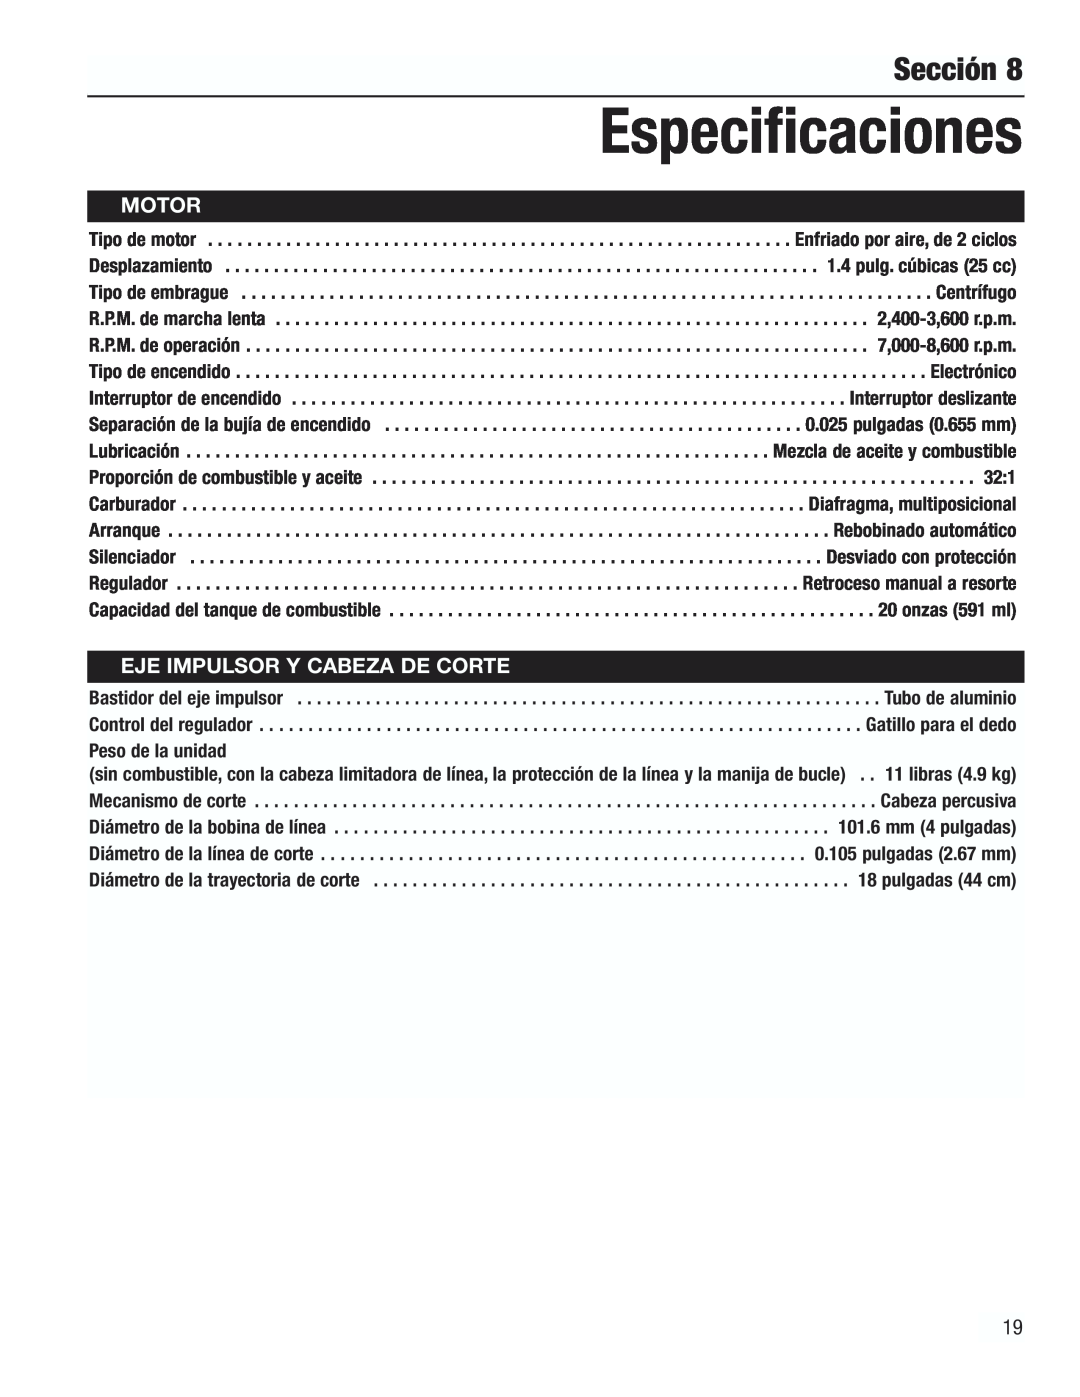 Cub Cadet CC3000 manual Especificaciones, Sección, Motor, Eje Impulsor Y Cabeza De Corte 